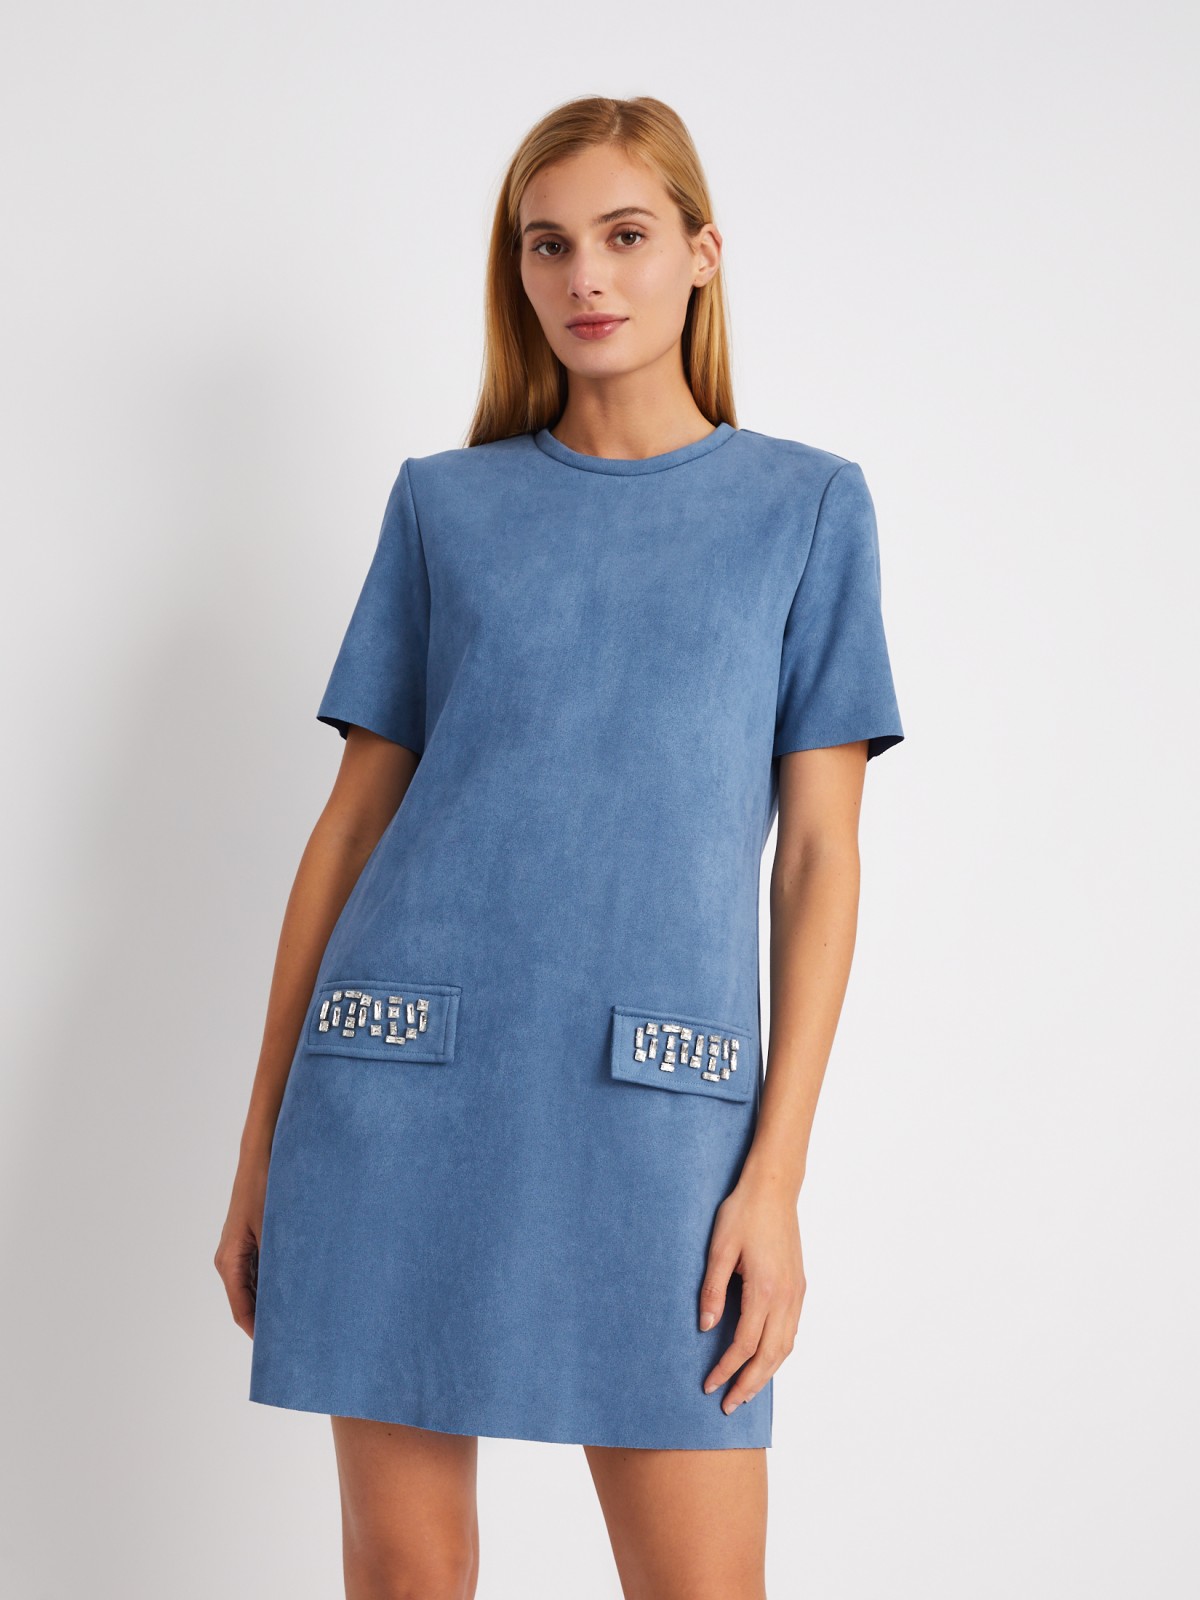 Платье-футболка из экозамши со стразами zolla 024118262361, цвет голубой, размер XS - фото 1